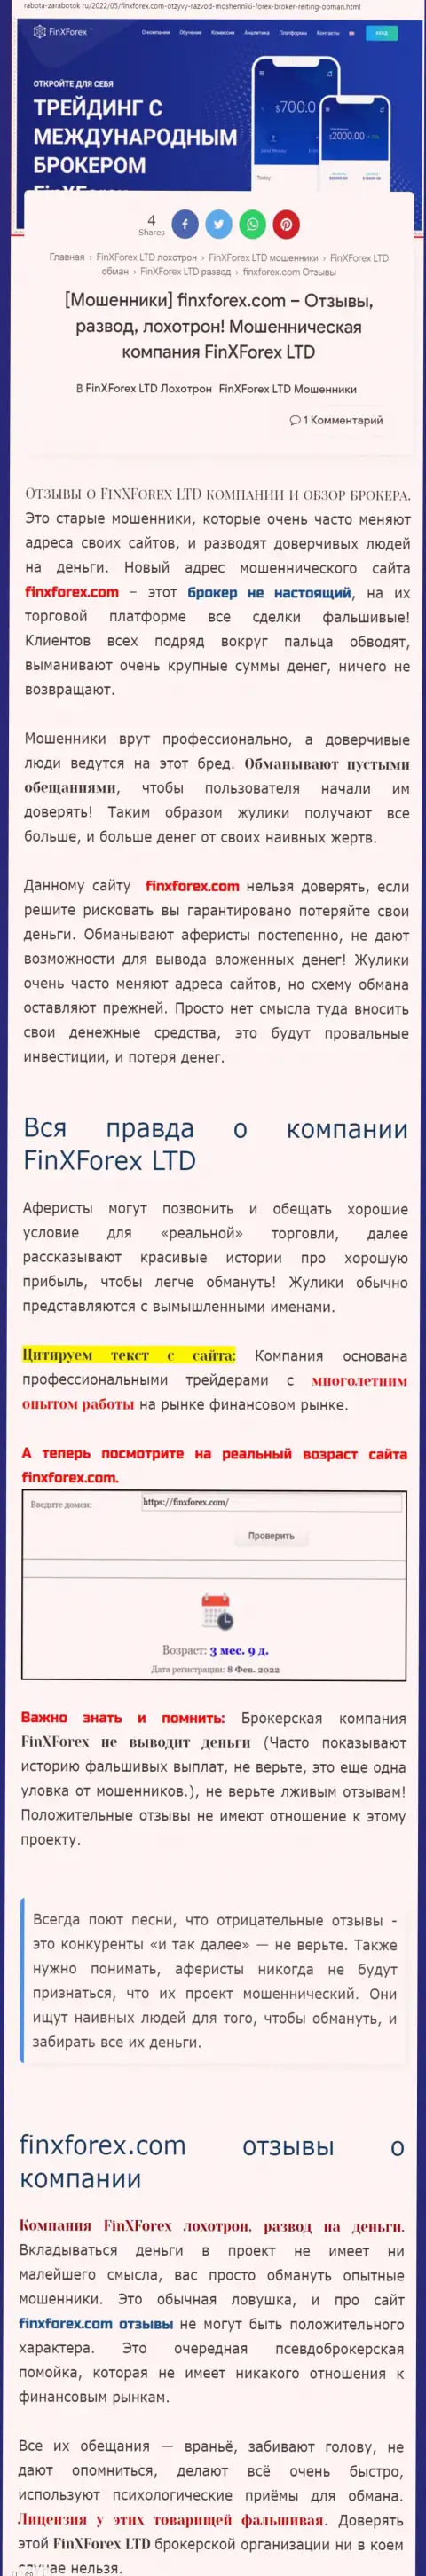 Автор обзора об FinX Forex говорит, что в компании ФинИксФорекс ЛТД разводят